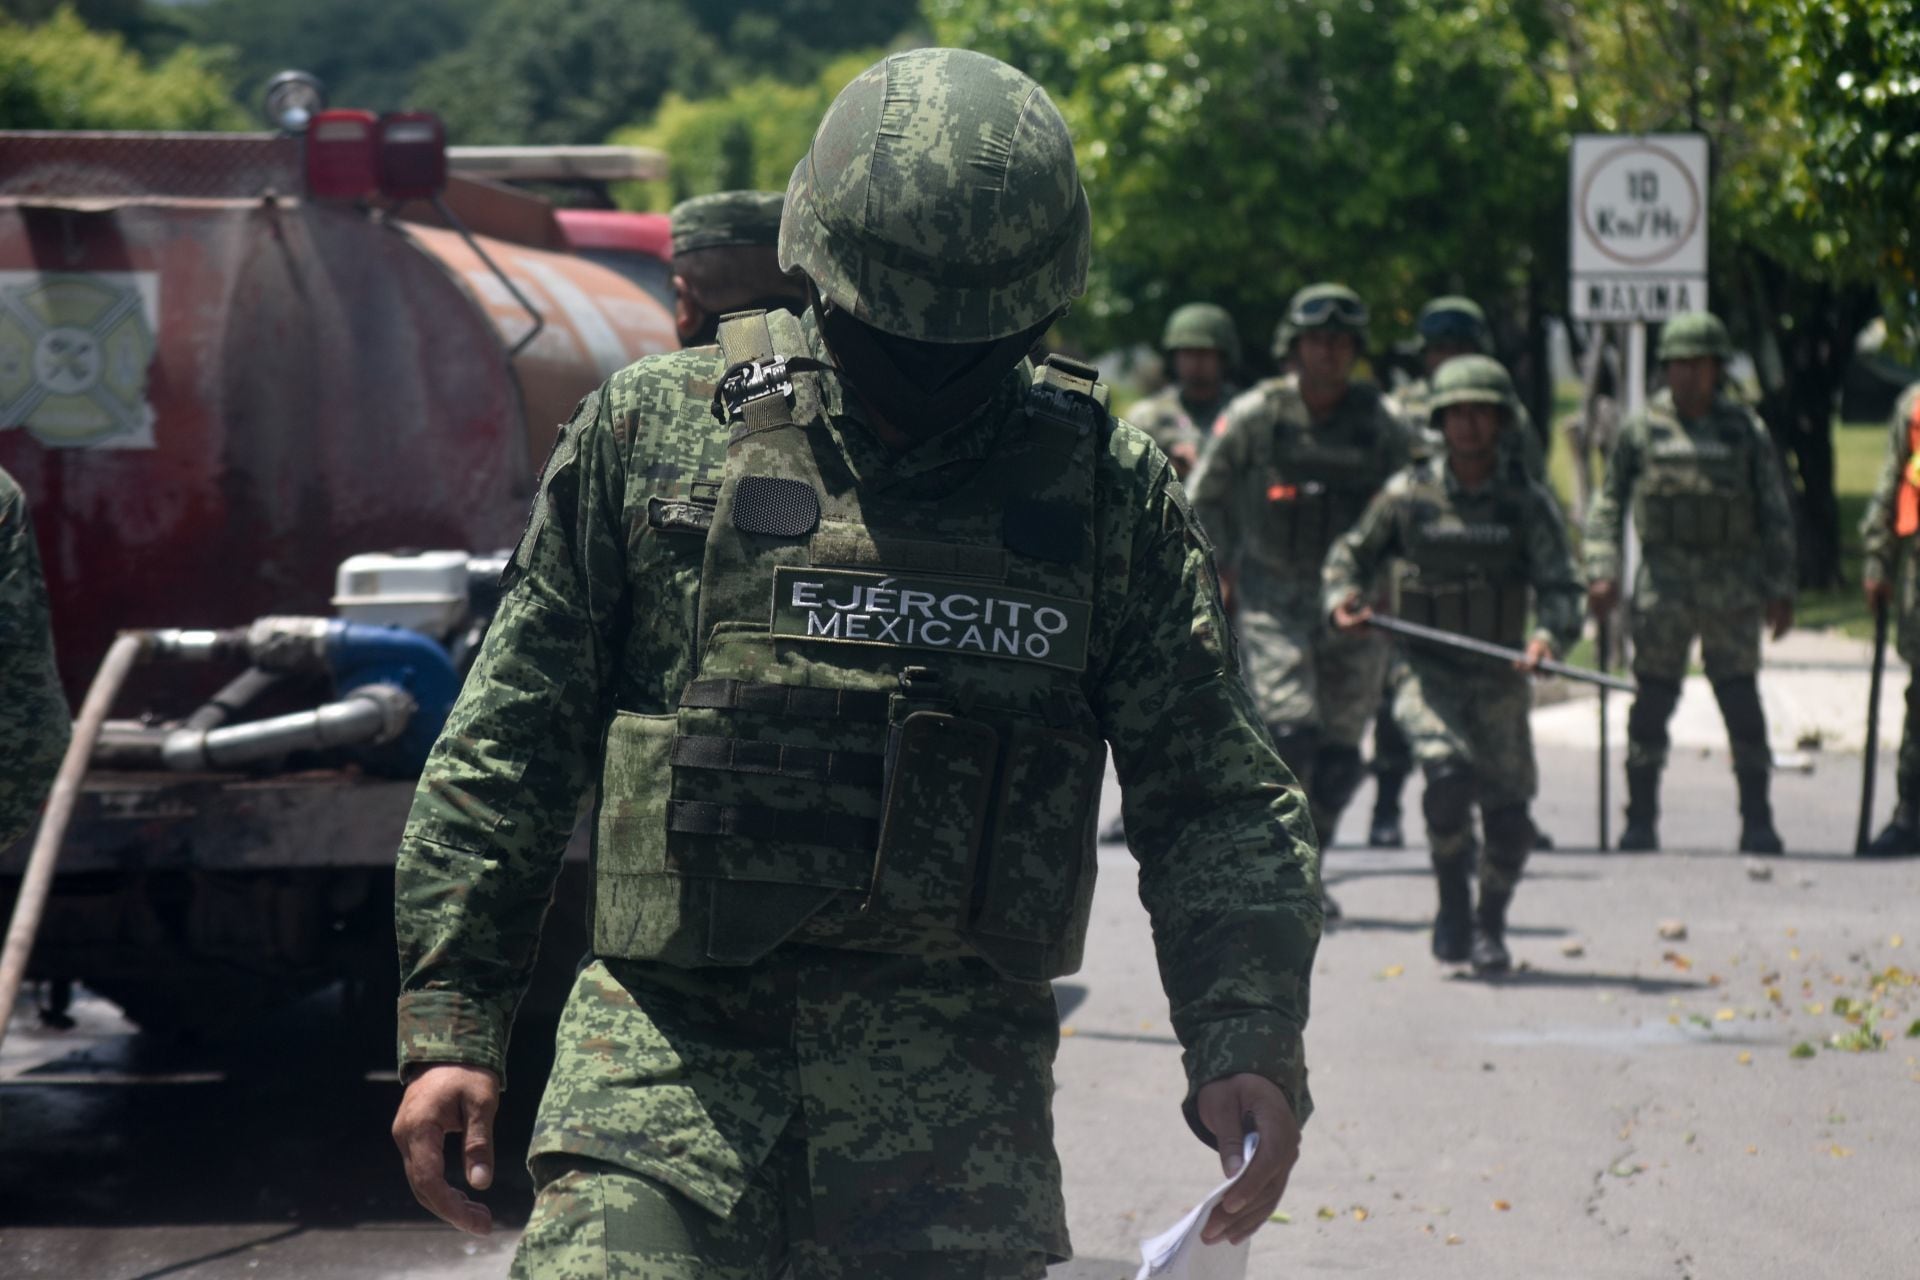 Sedena descarta muerte del coronel José Isidro Grimaldo y culpa al CJNG de su plagio en Jalisco